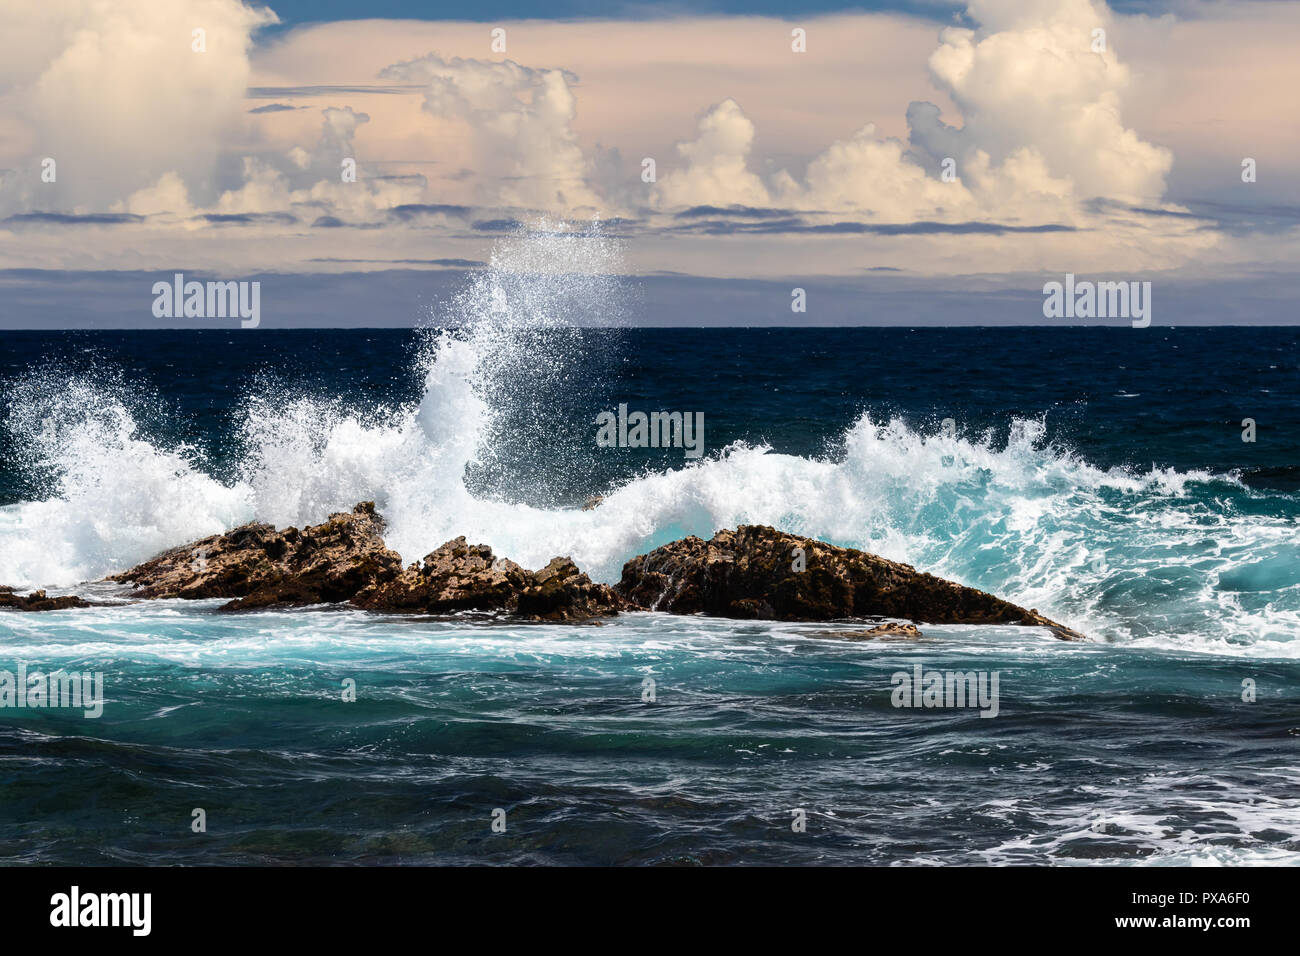 Wave Absturz auf Dark Rock, weiße Gischt in der Luft, Wave auf der einen Seite, dunkle Meer und Wolken im Hintergrund. Schwarzer Sandstrand, Punaluu, Hawaii. Stockfoto